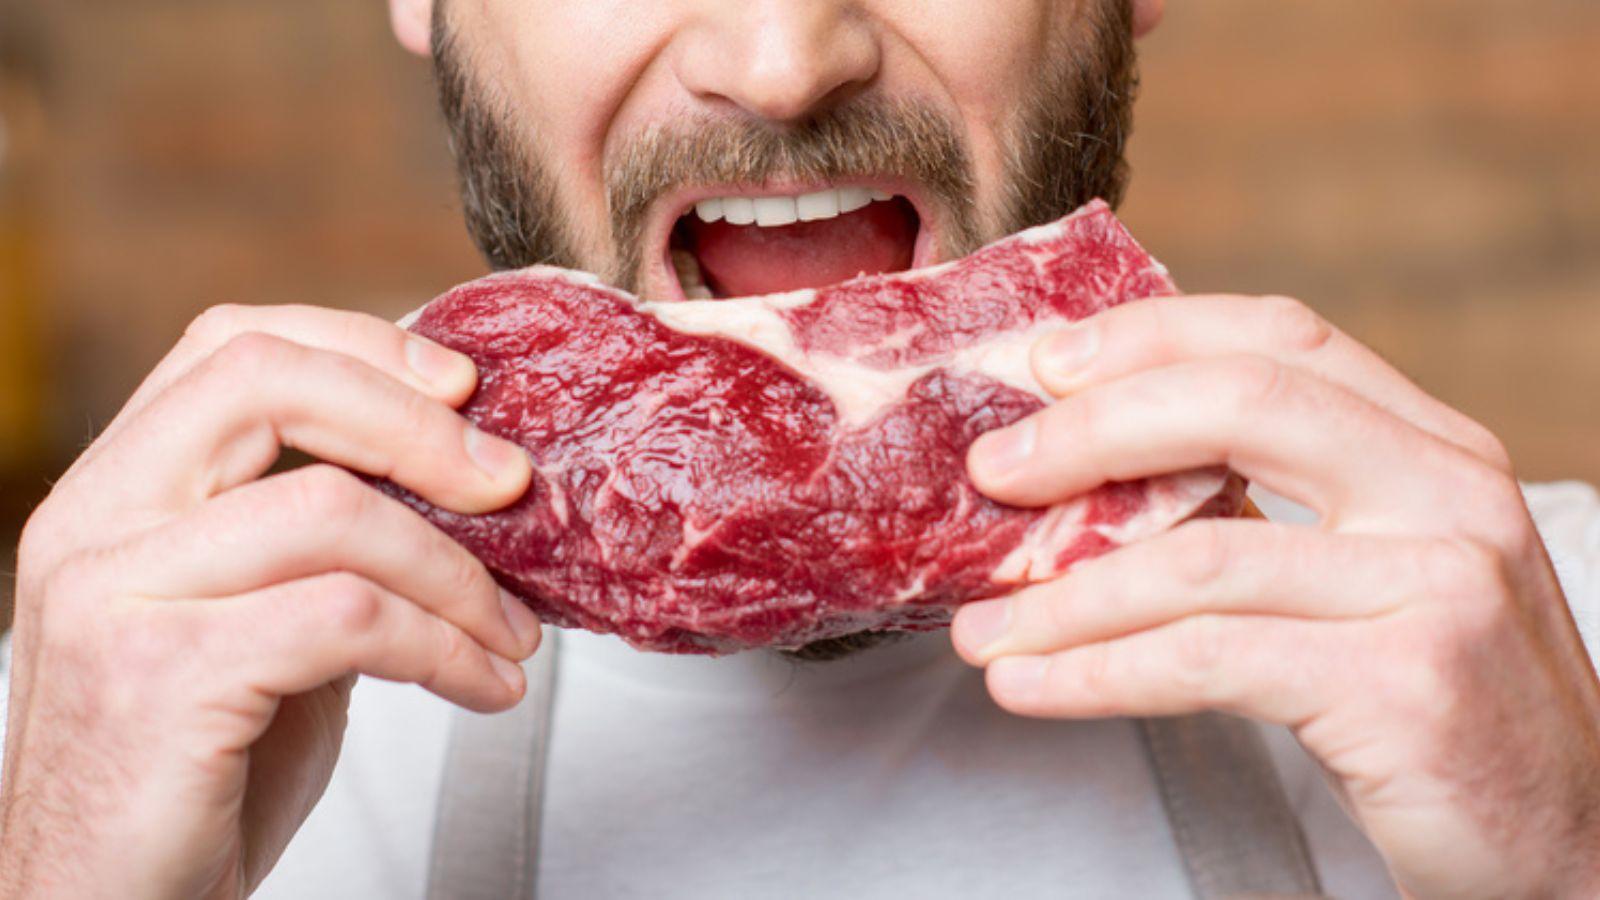 Cum arată bărbatul care mănâncă doar carne crudă de pui. Care e motivul pentru care urmează acest regim alimentar bizar